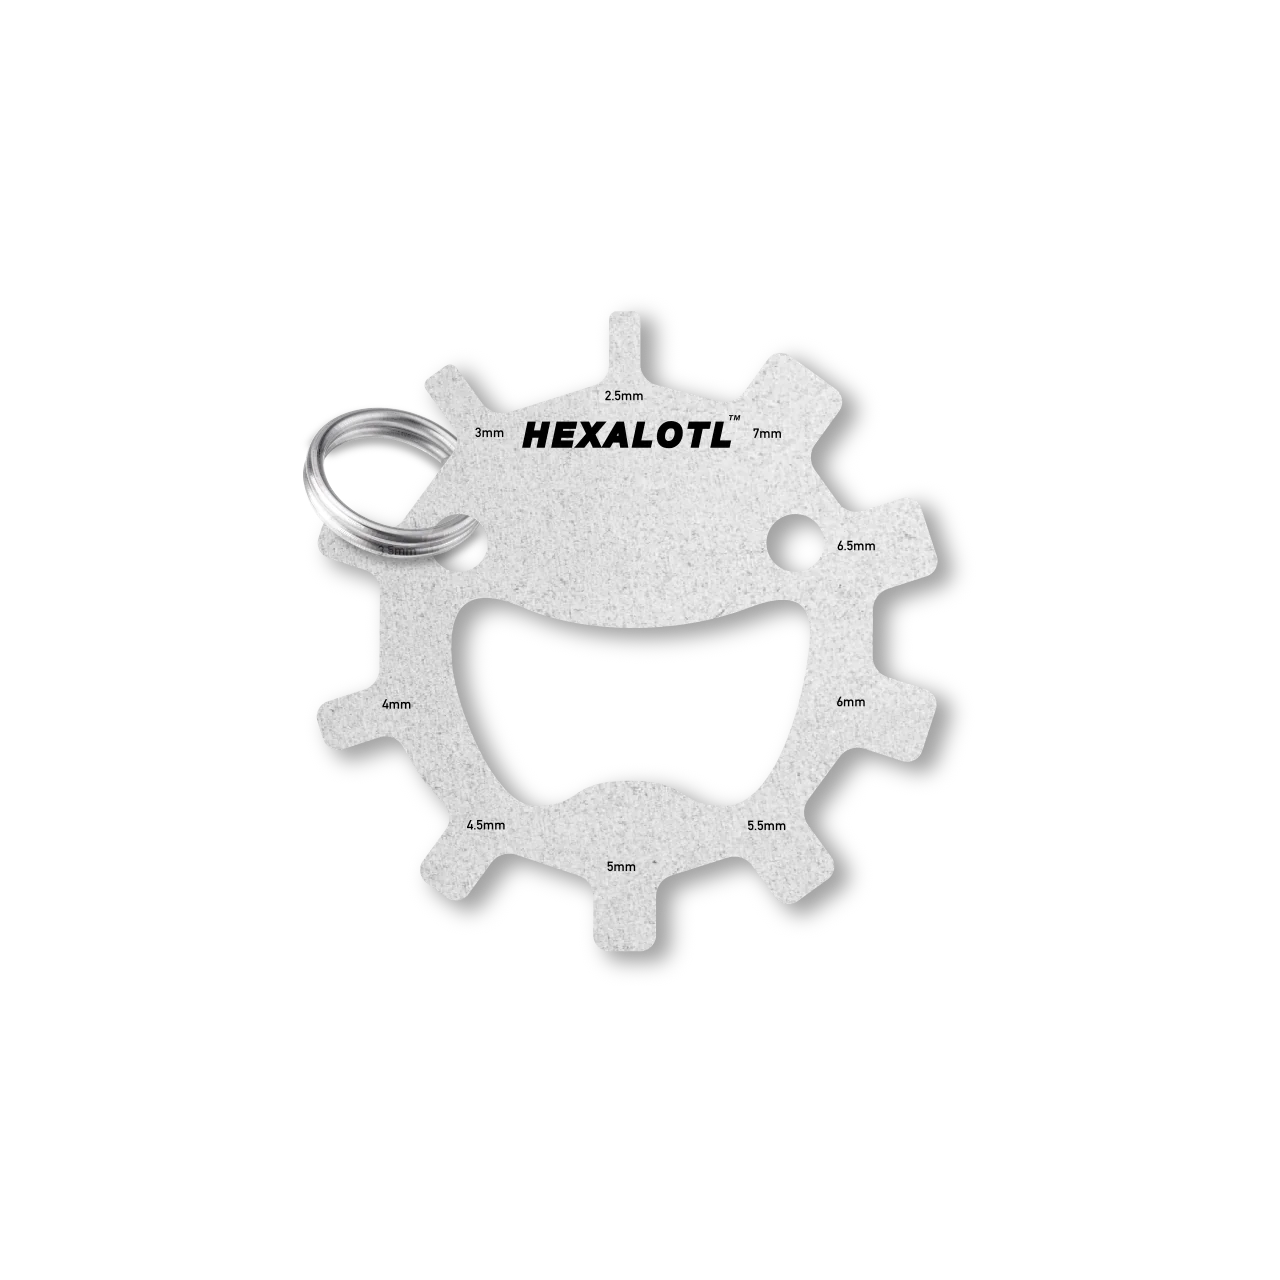 Hexalotl 11-in-1 Hex-Key Set (Metric)